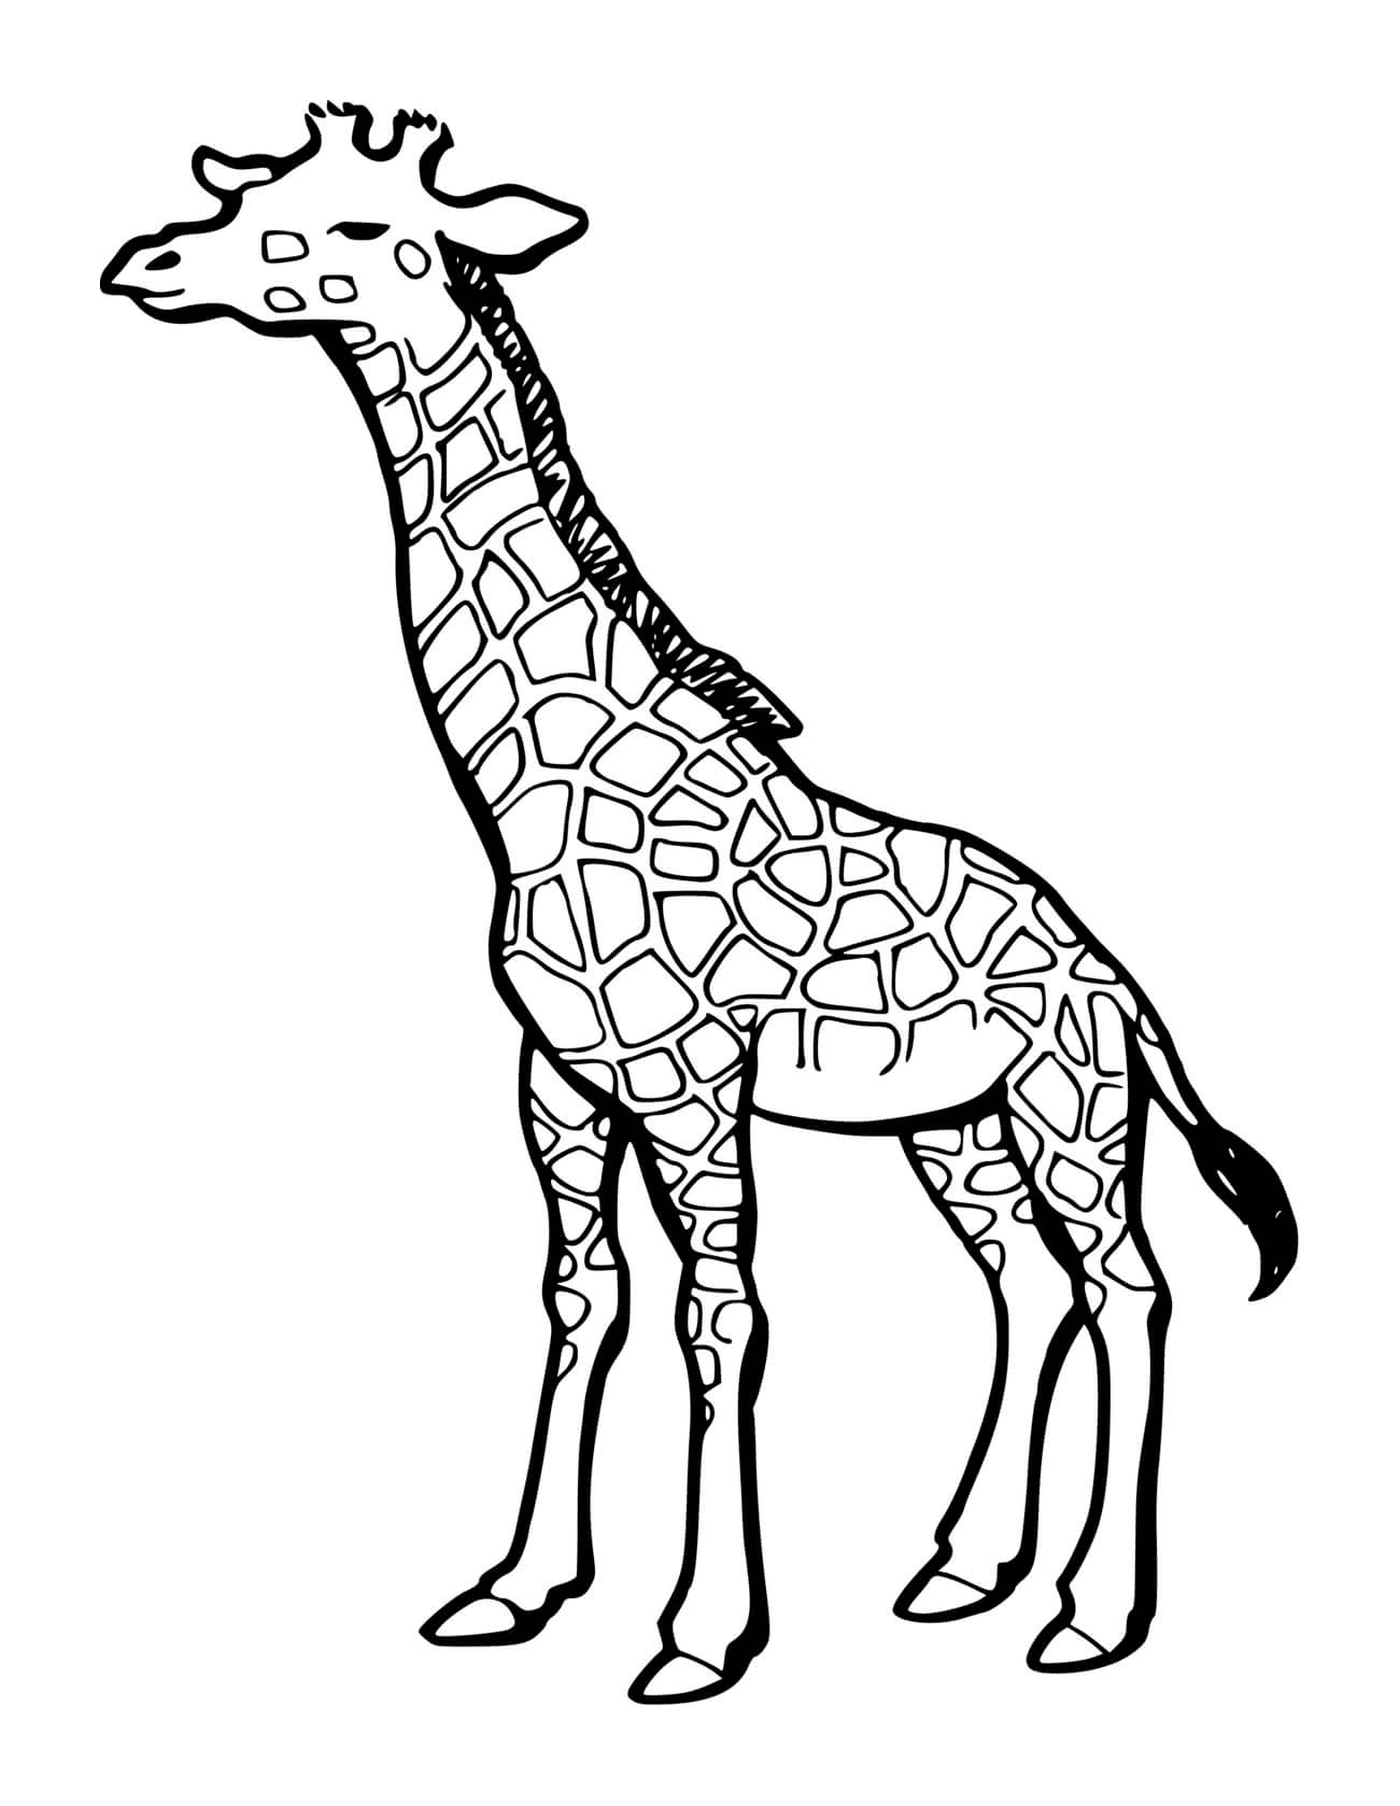   Une partie du corps d'une girafe 